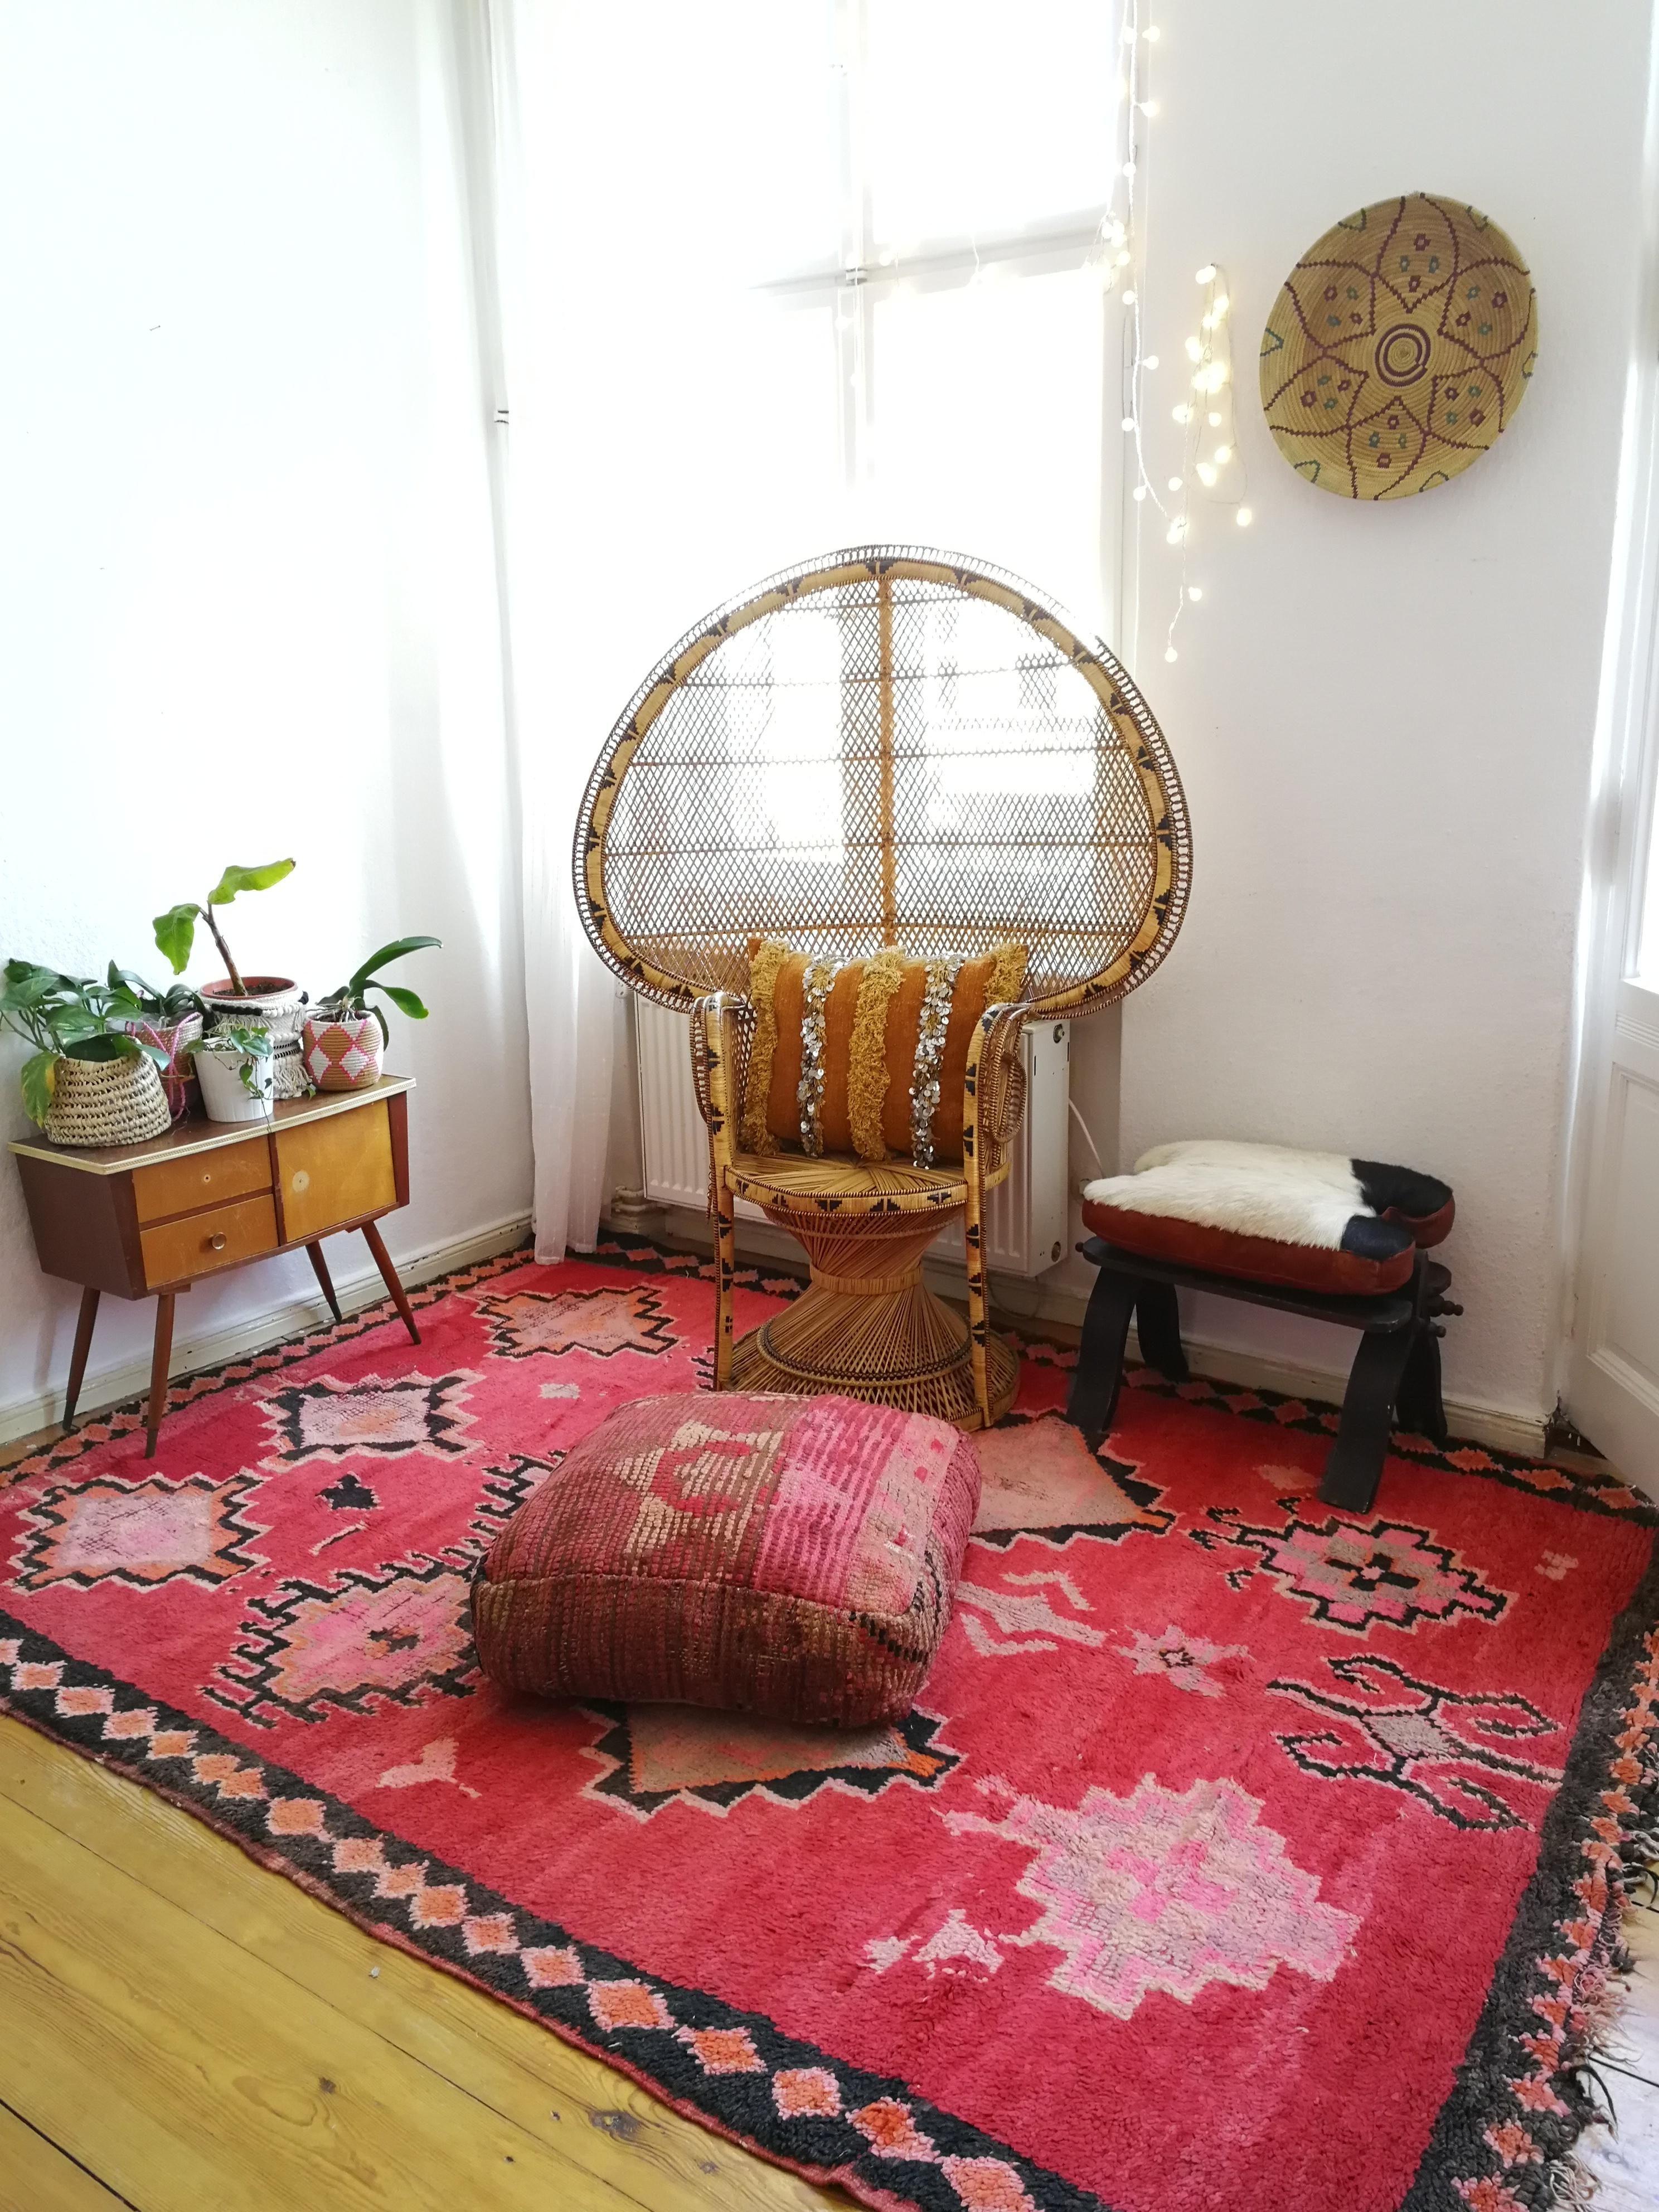 Vintage rug with old story
#rug #design #interior